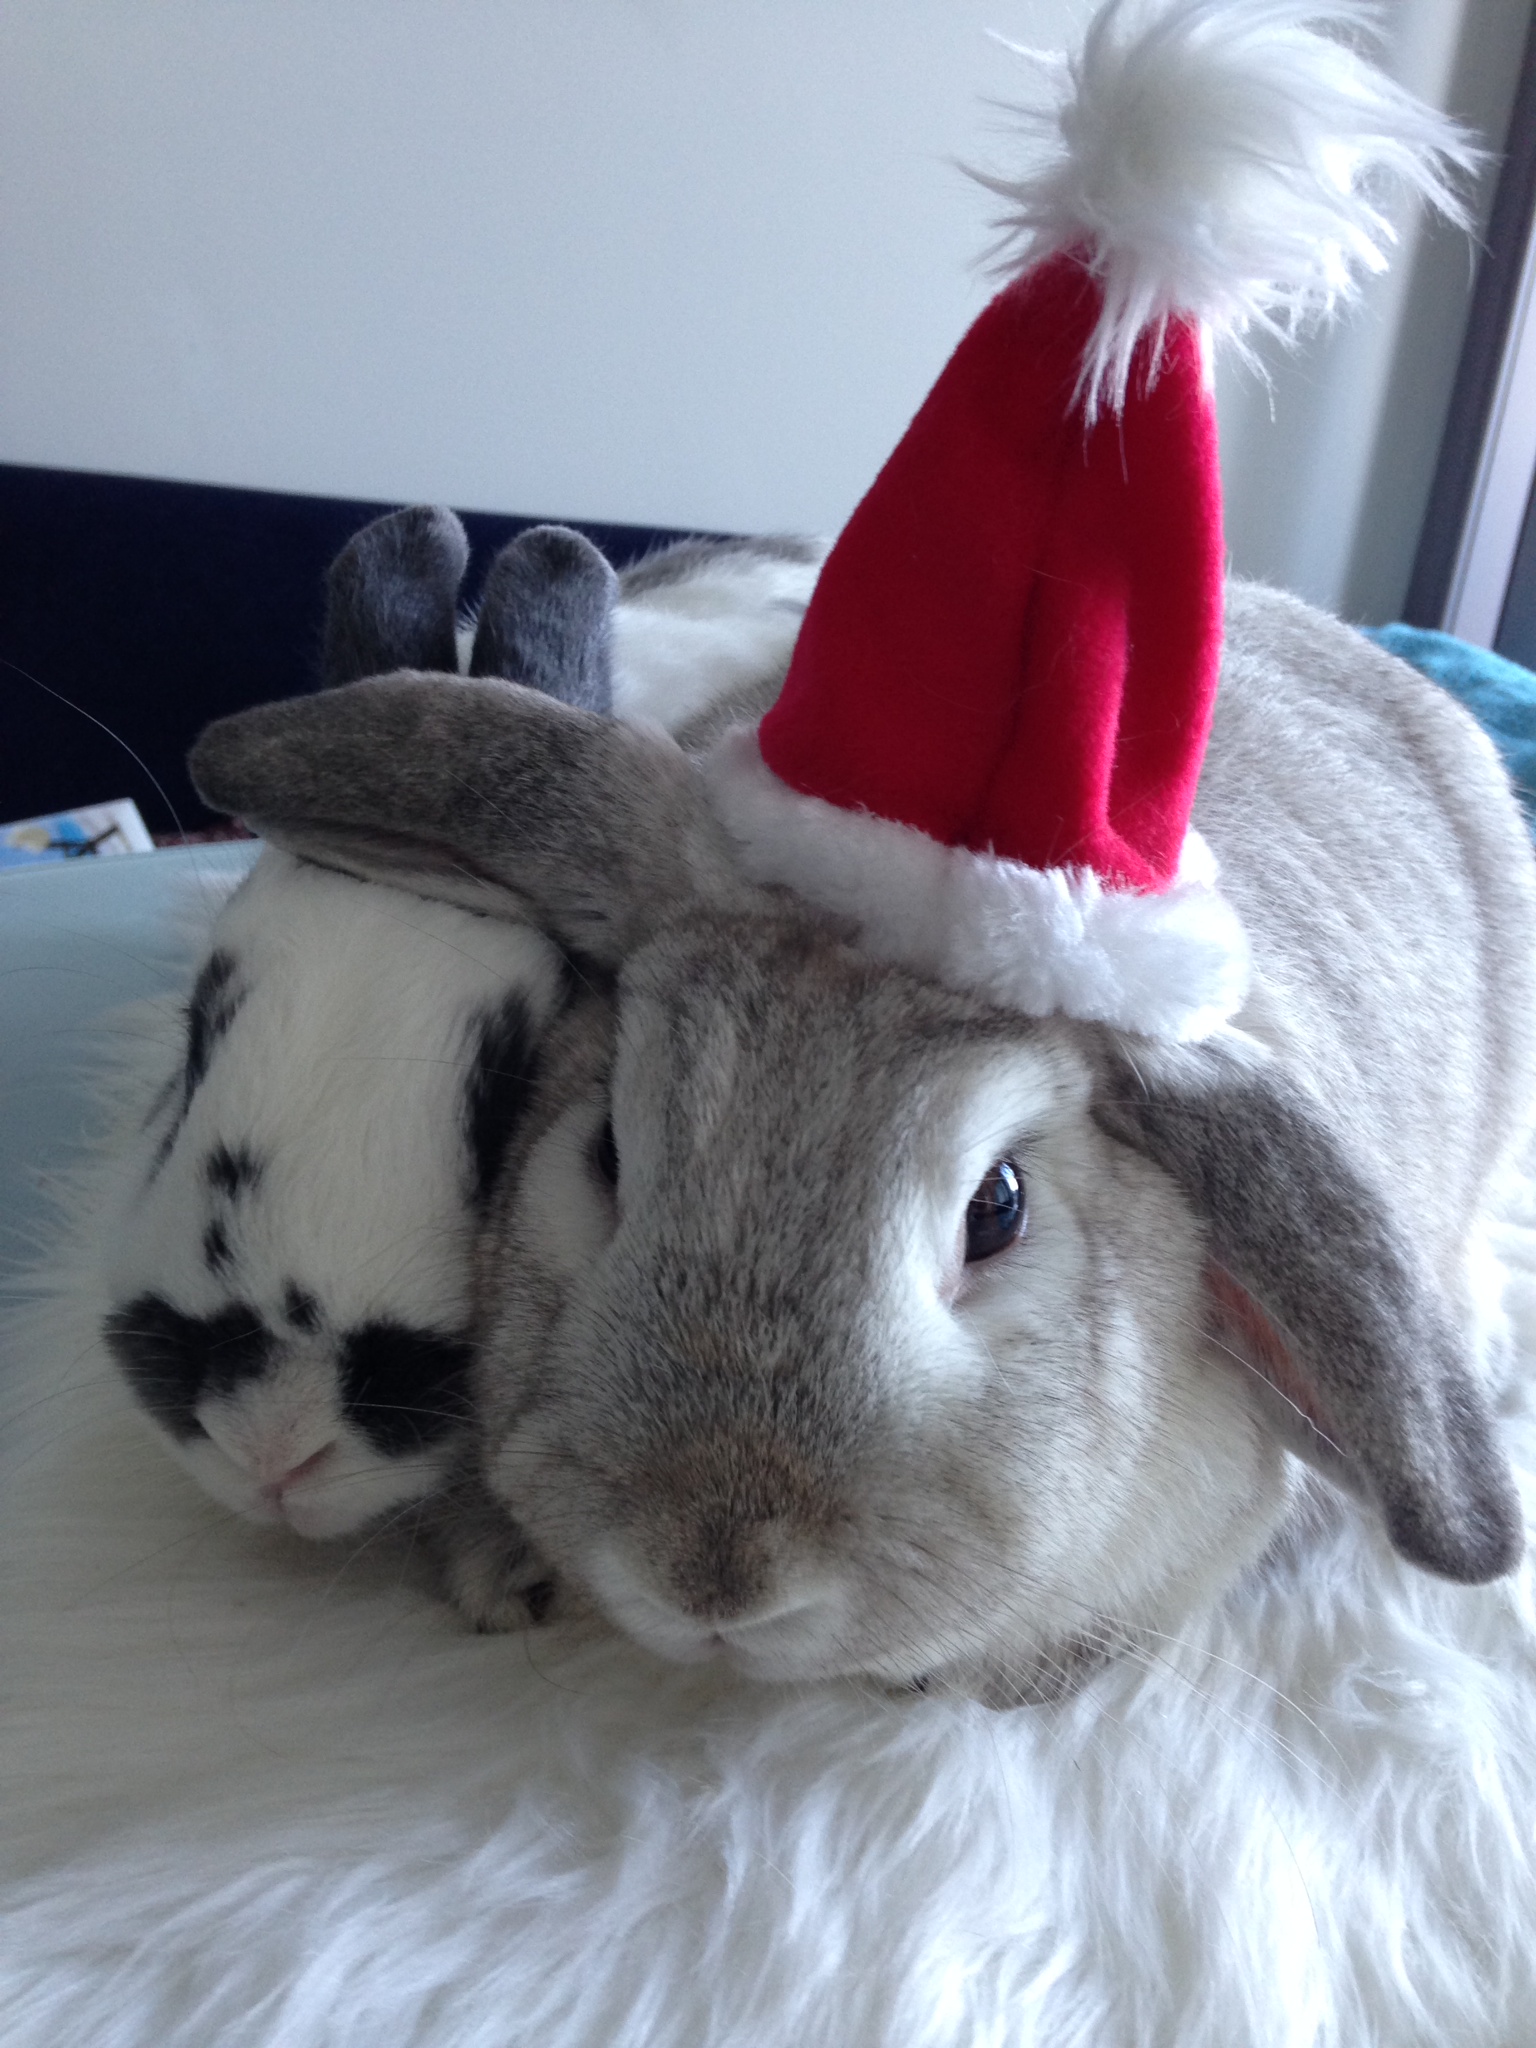  Diva Bunny Doesn't Share the Santa Hat 5